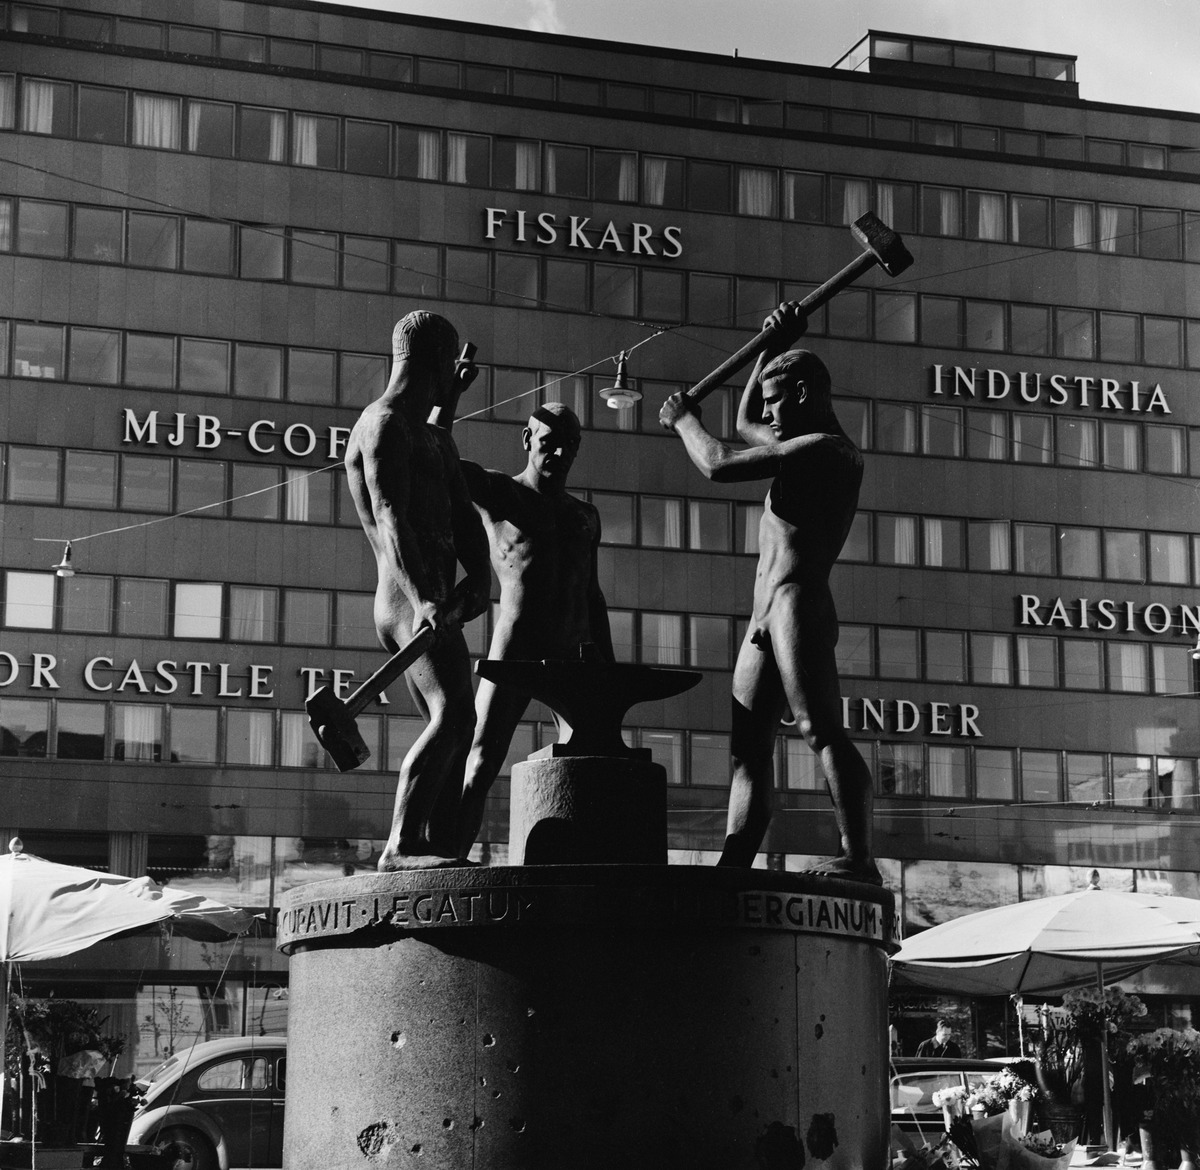 Kolmen sepän patsas, kuvanveistäjä Felix Nylund 1932